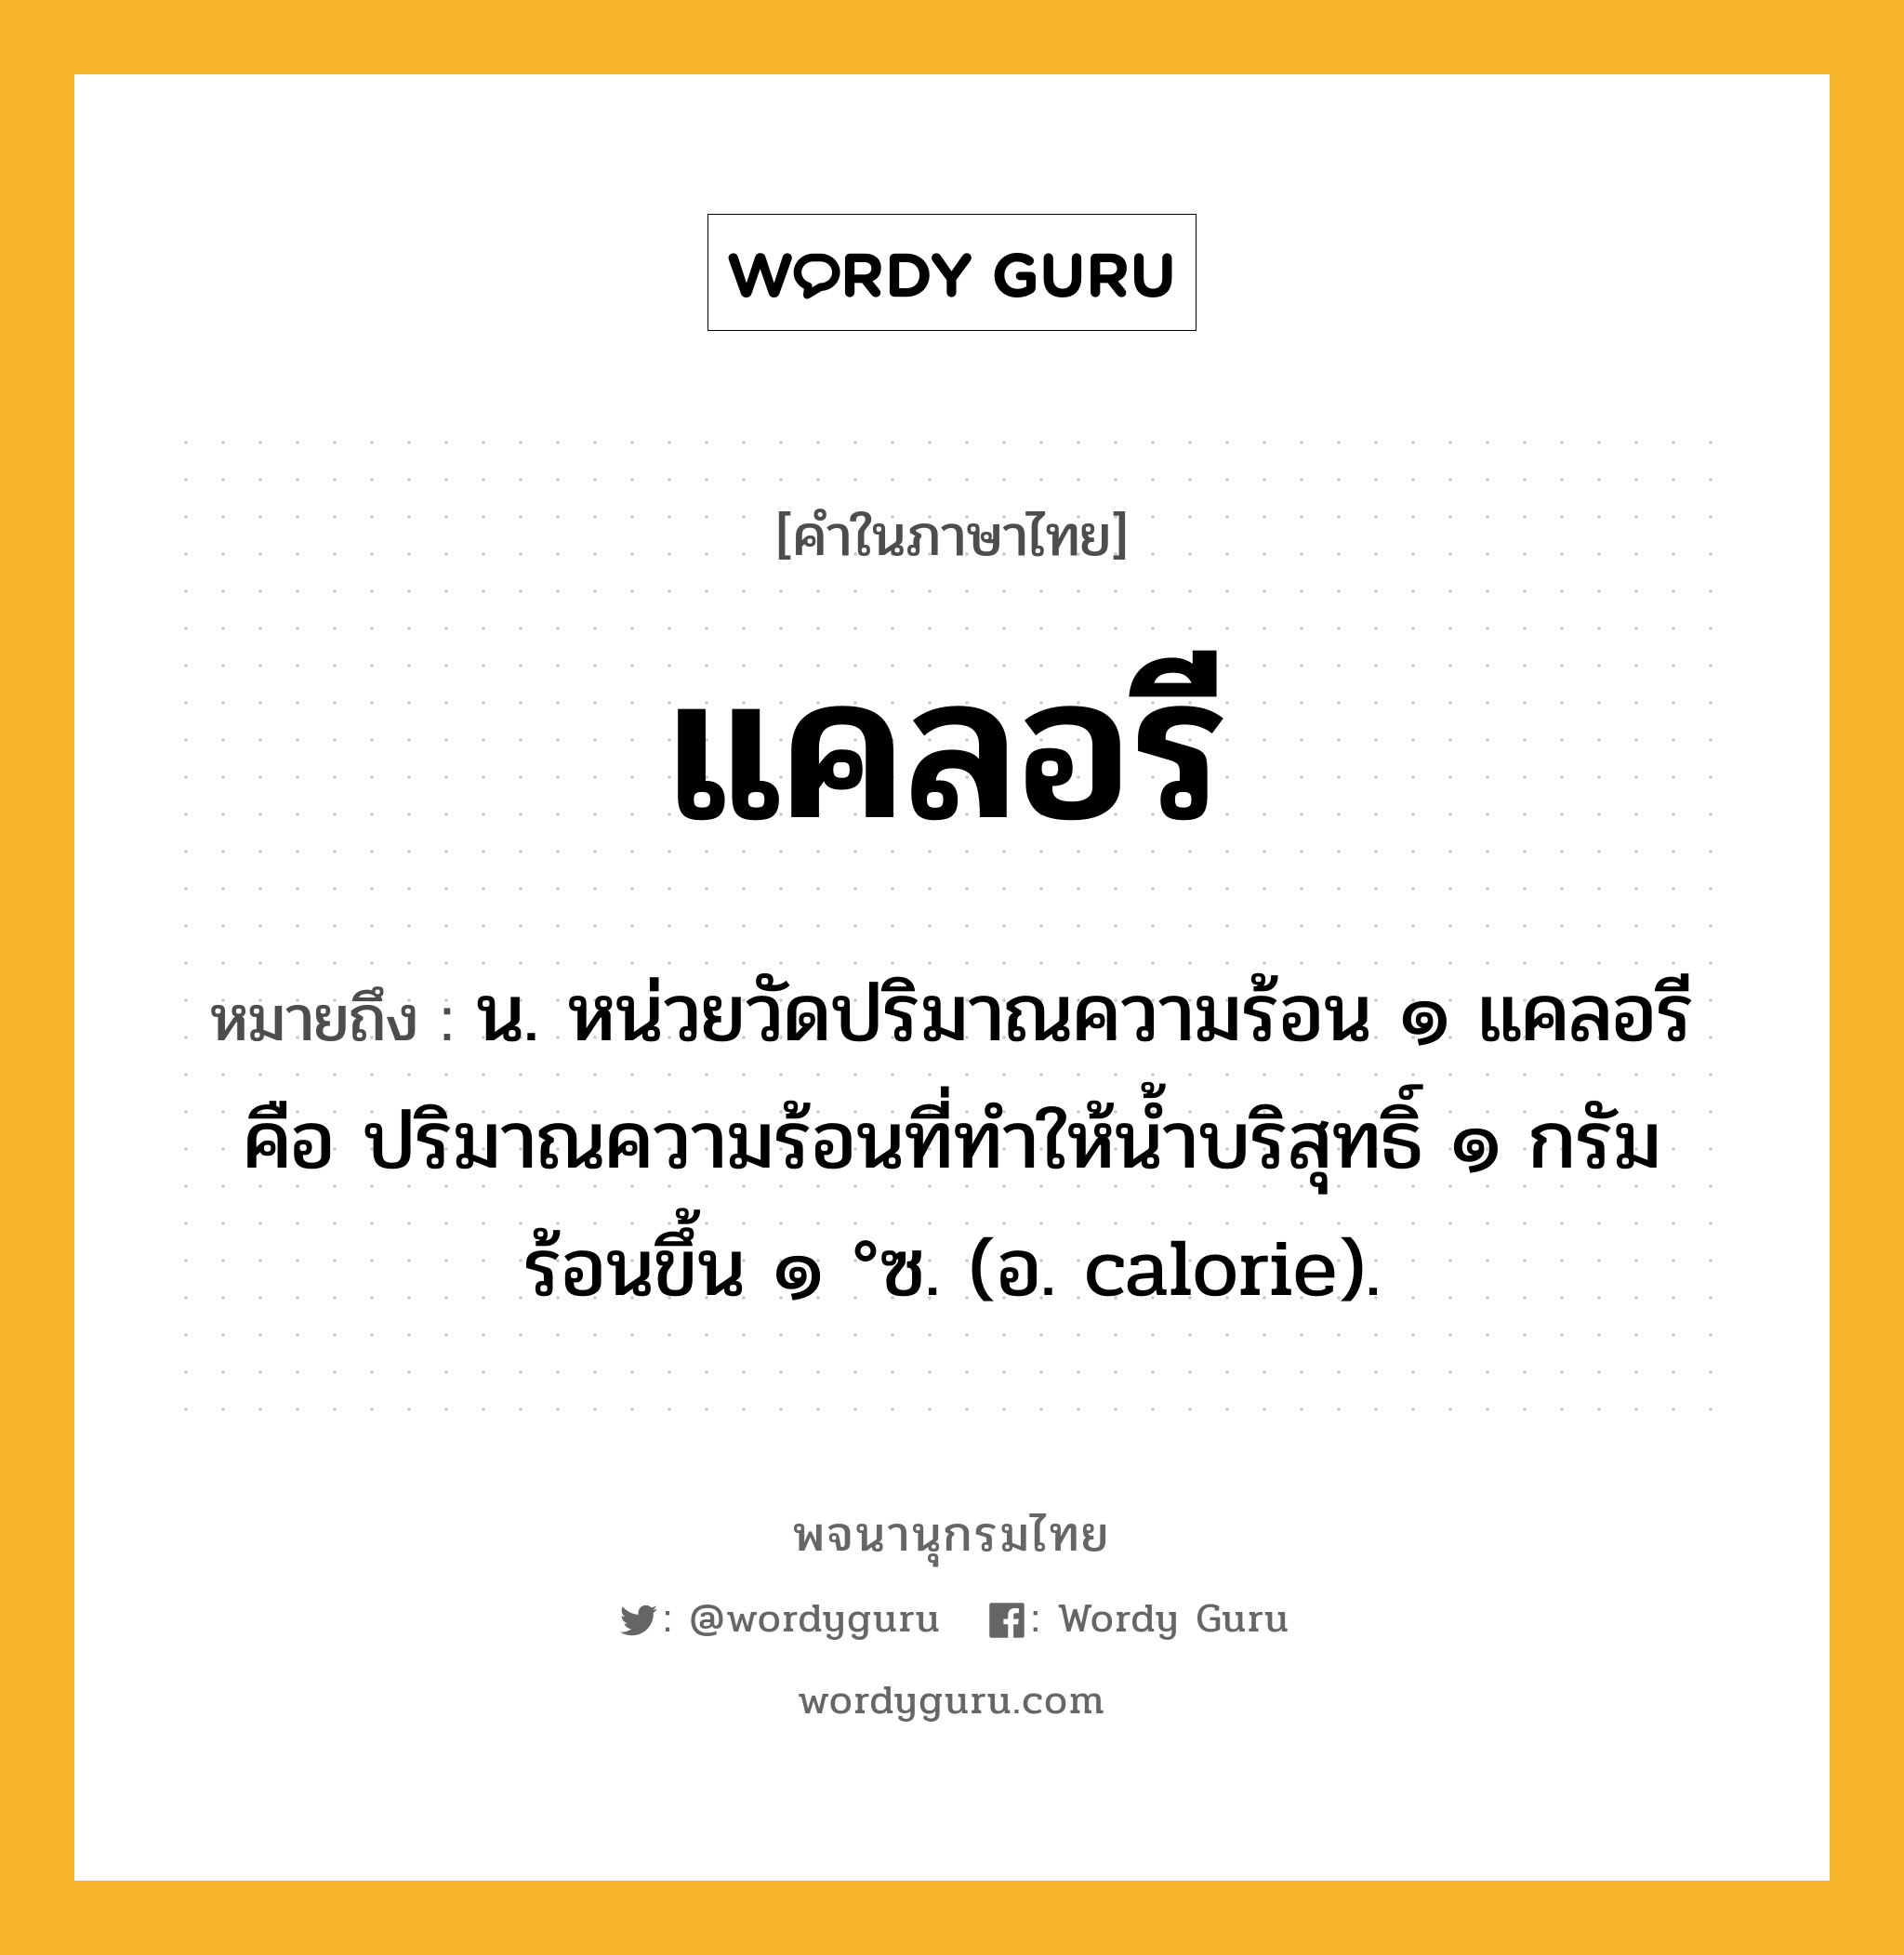 แคลอรี หมายถึงอะไร?, คำในภาษาไทย แคลอรี หมายถึง น. หน่วยวัดปริมาณความร้อน ๑ แคลอรี คือ ปริมาณความร้อนที่ทําให้นํ้าบริสุทธิ์ ๑ กรัม ร้อนขึ้น ๑ °ซ. (อ. calorie).